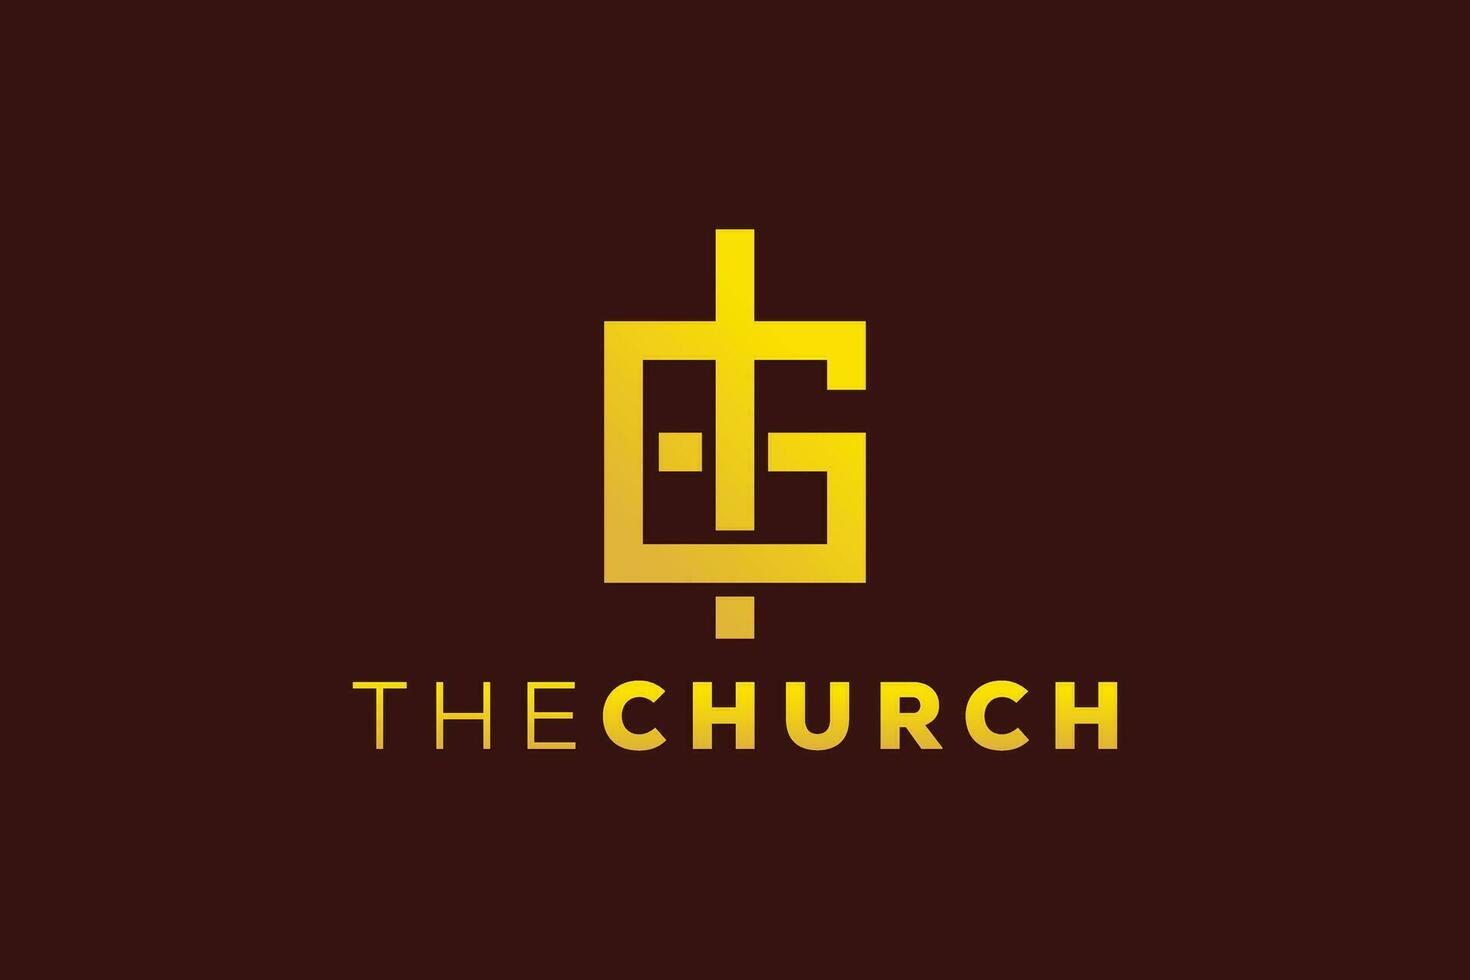 branché et professionnel lettre g église signe Christian et paisible vecteur logo